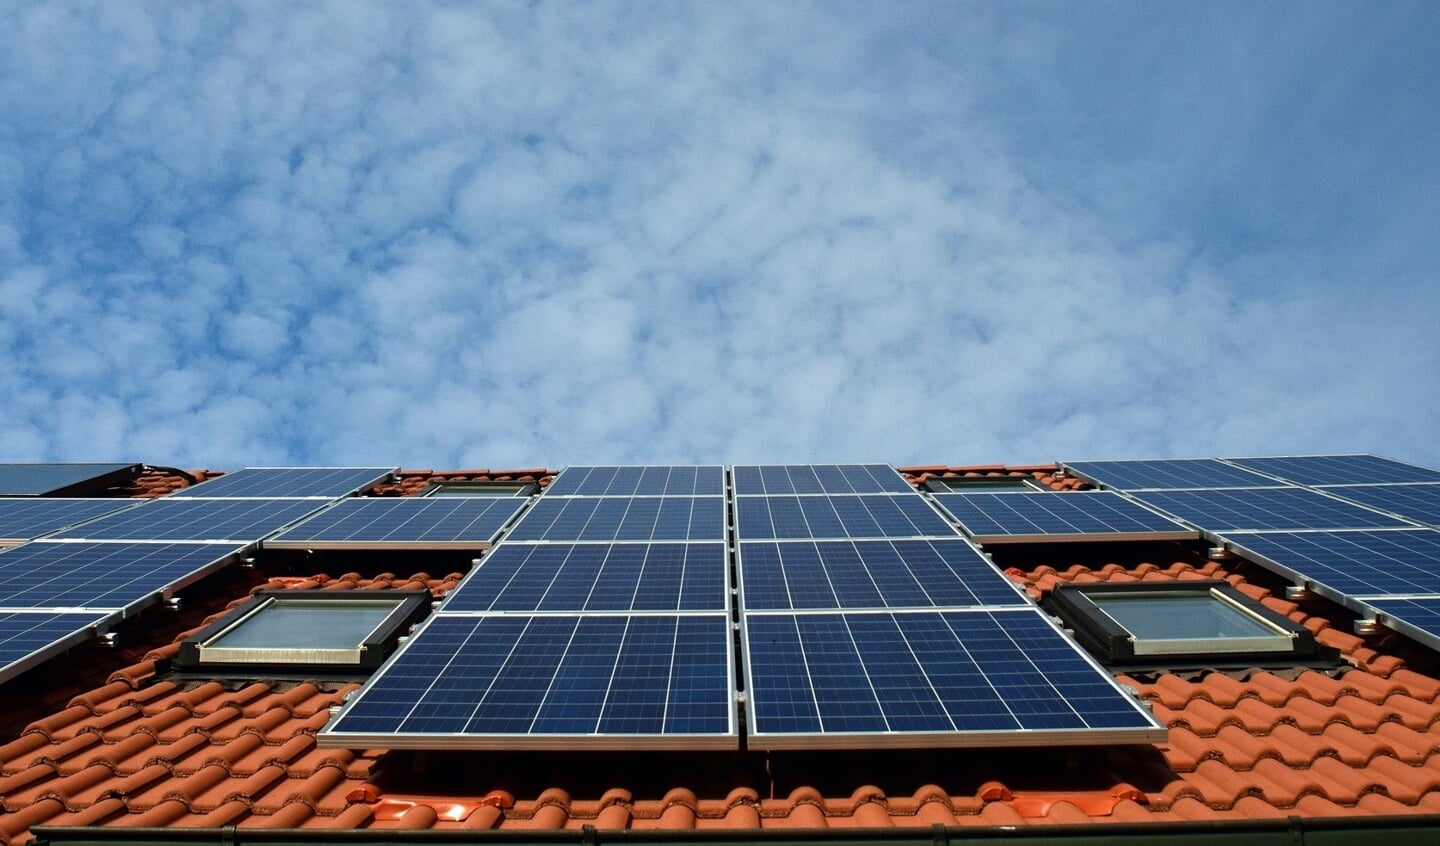 De meeste groene energie die in Drenthe wordt opgewekt is afkomstig van zonnepanelen.